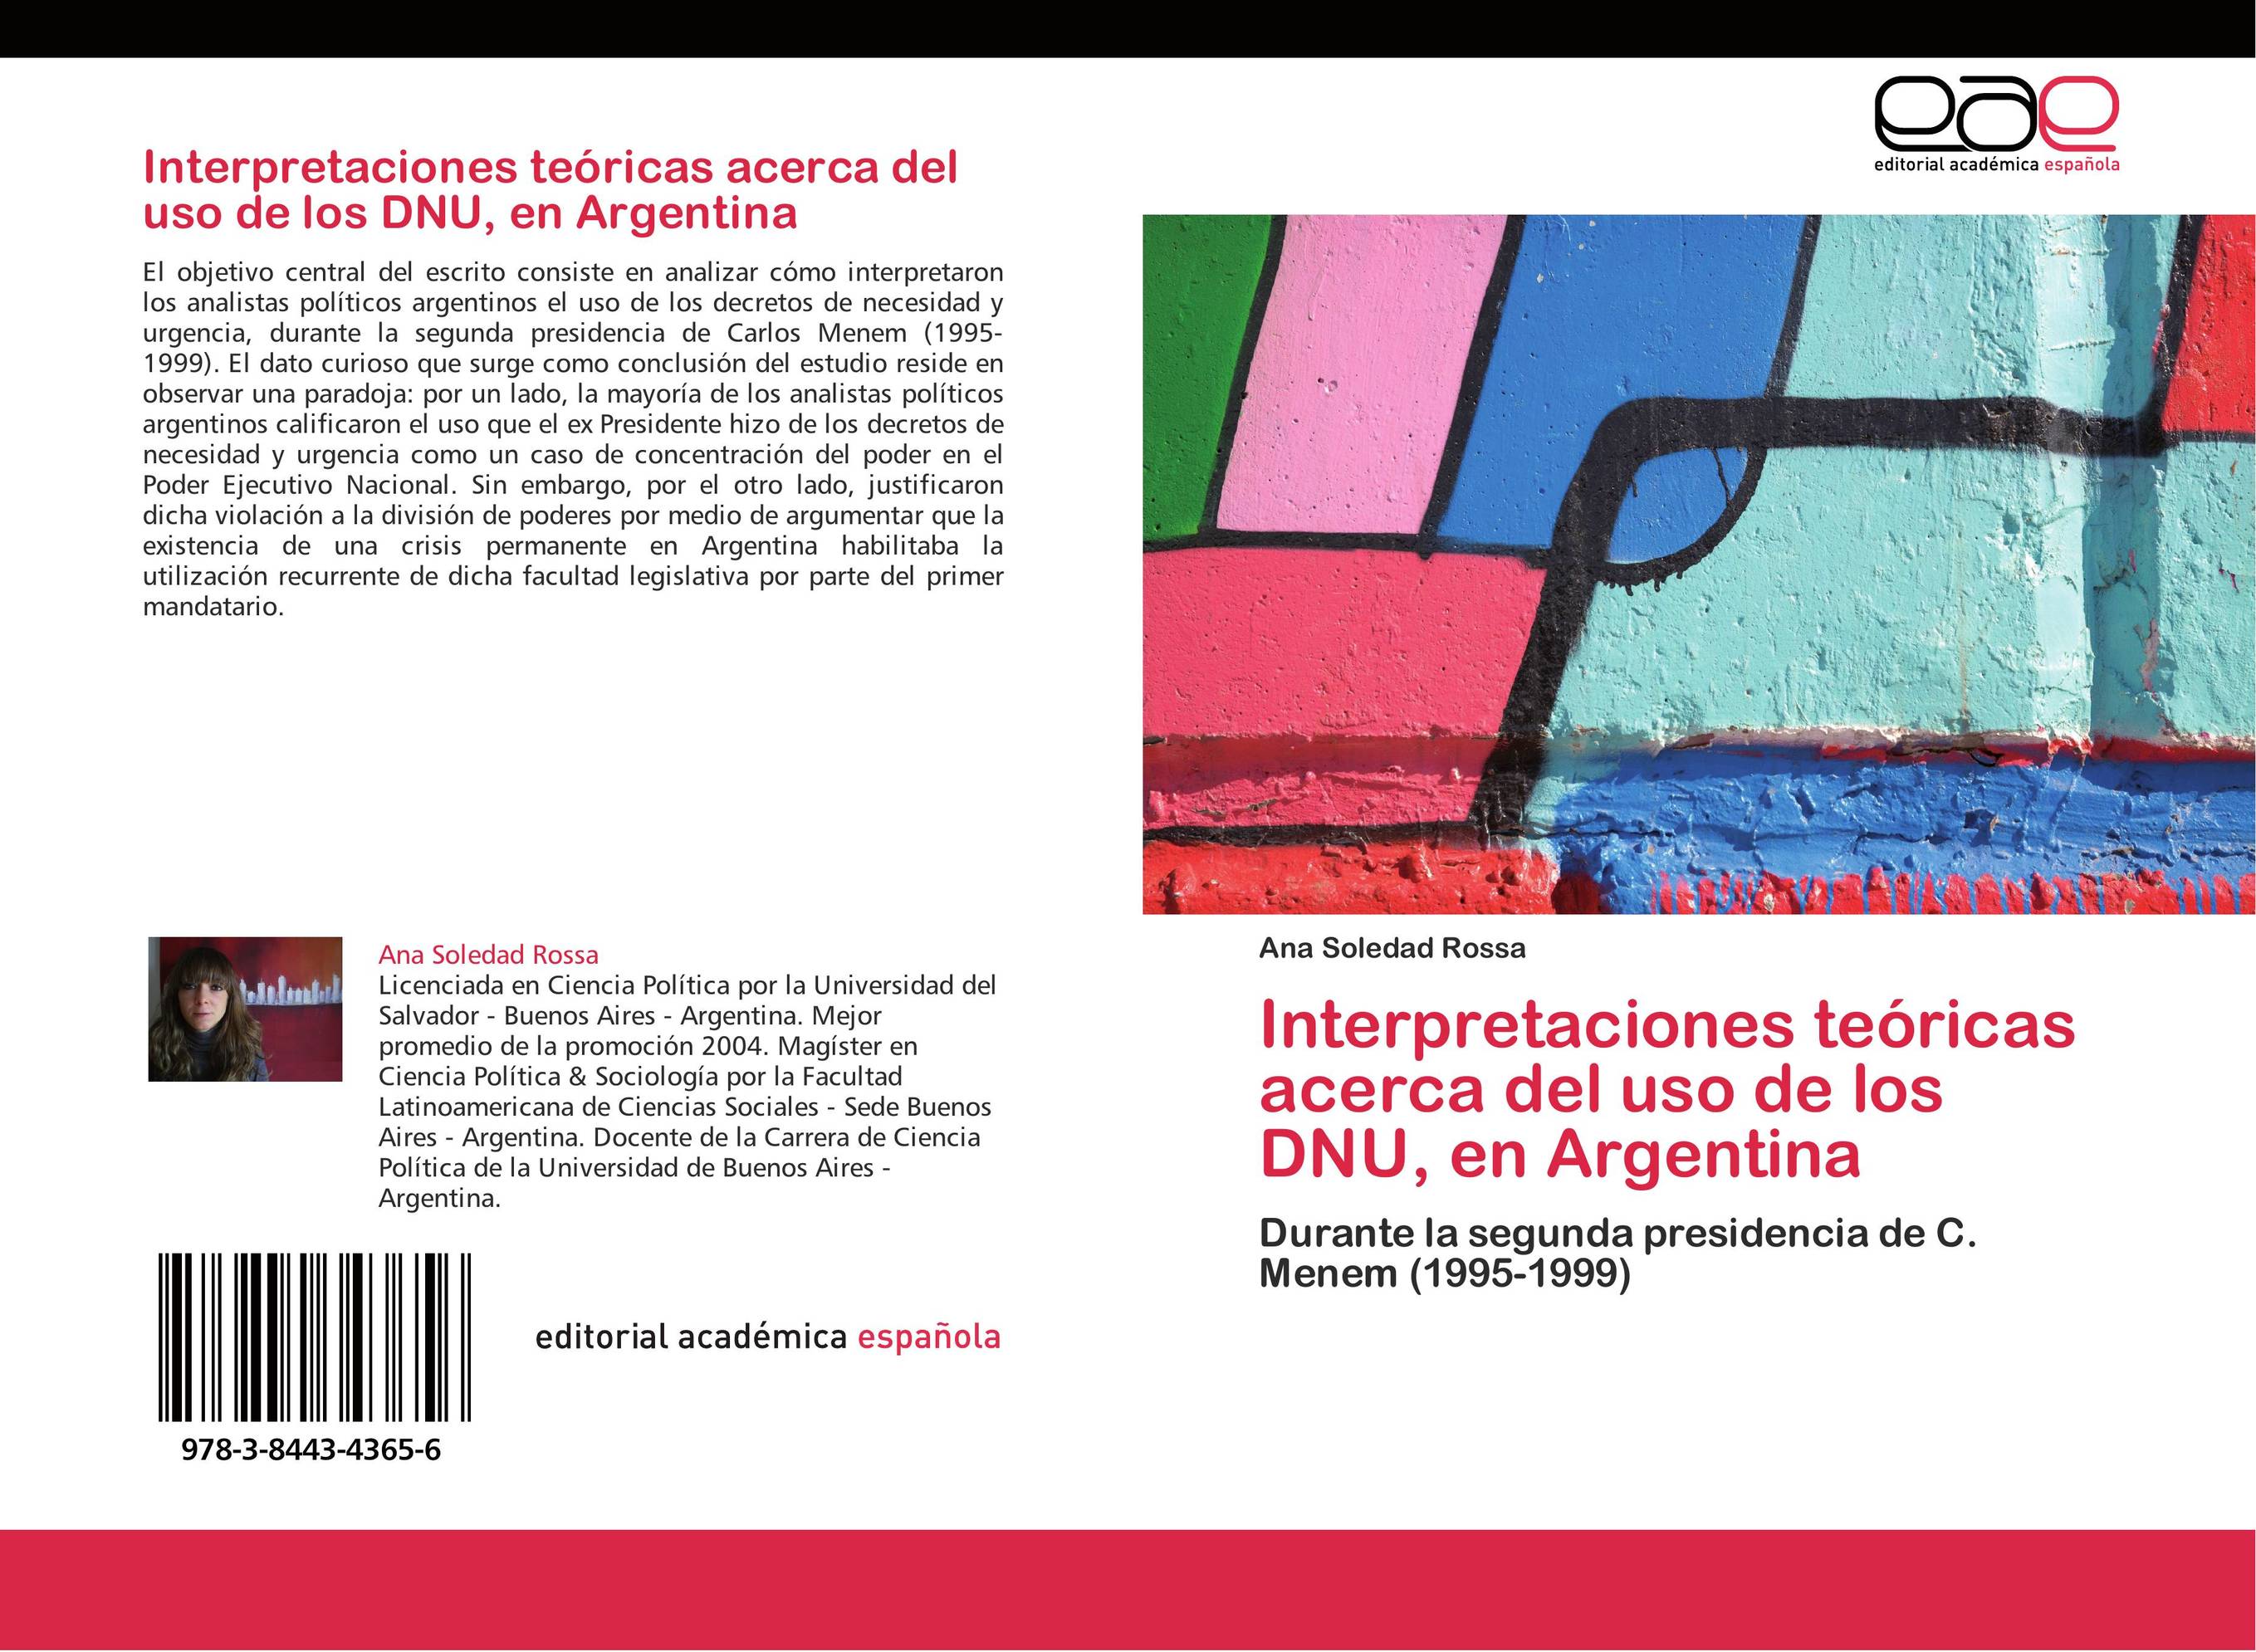 Interpretaciones teóricas acerca del uso de los DNU, en Argentina